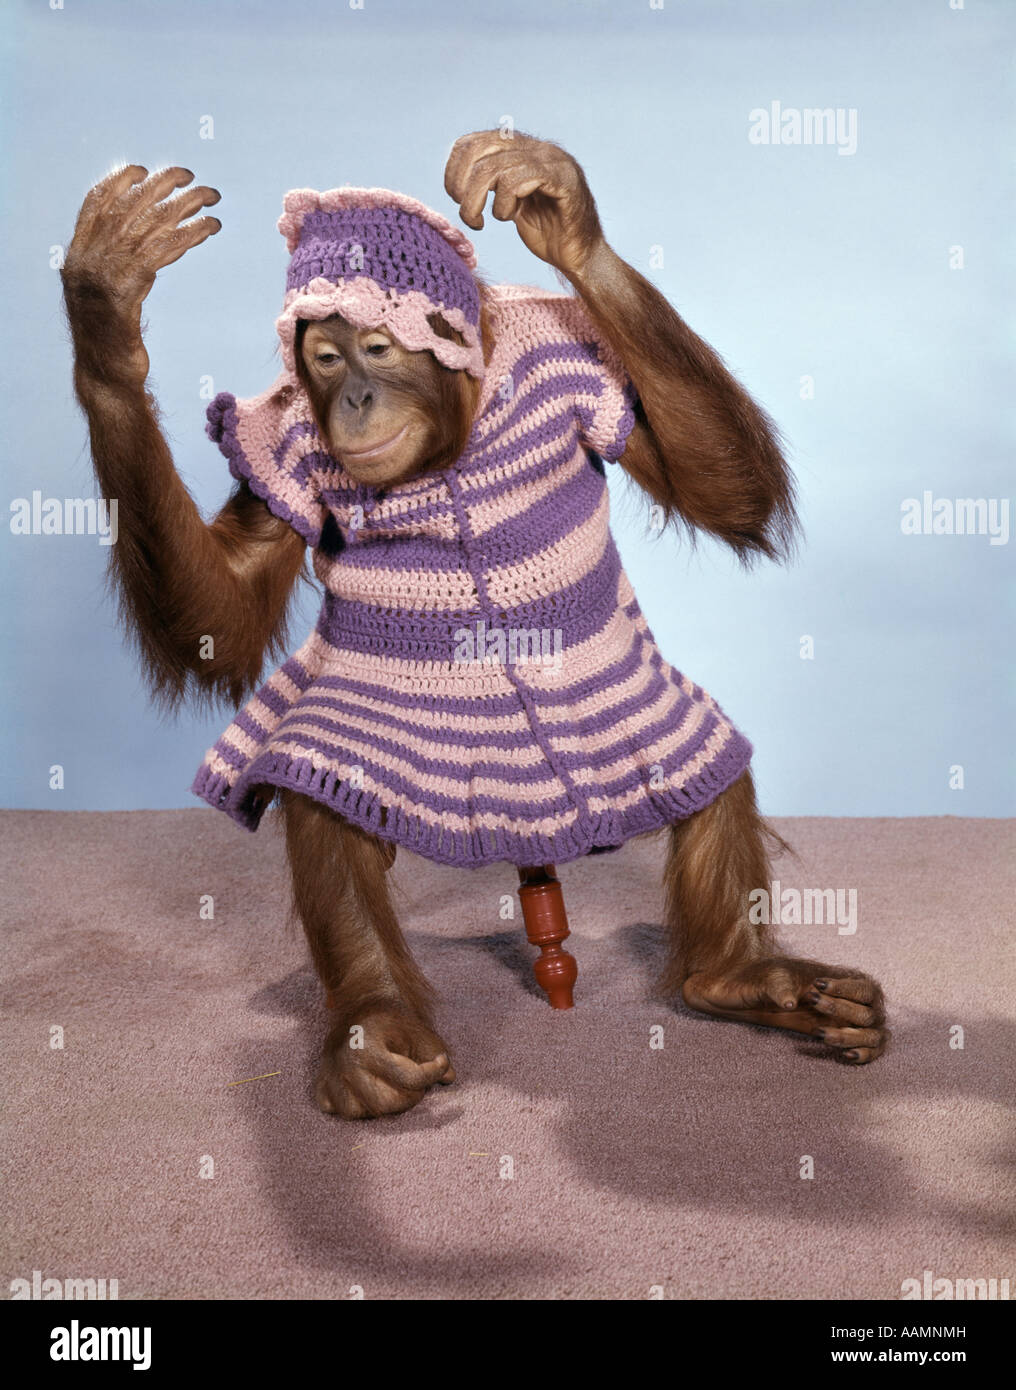 Abito scimmia immagini e fotografie stock ad alta risoluzione - Alamy